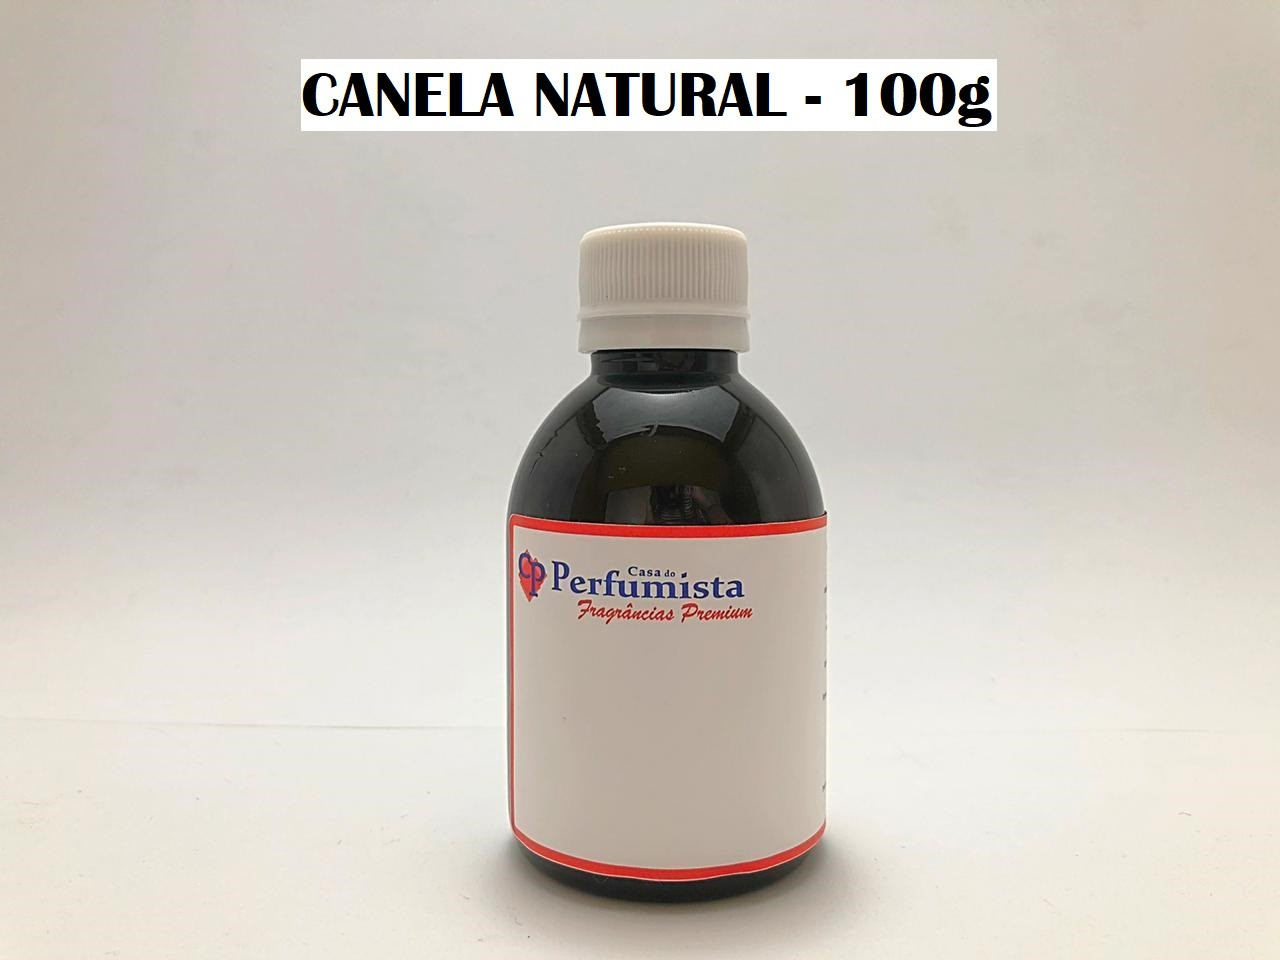 CANELA NATURAL - 100g 